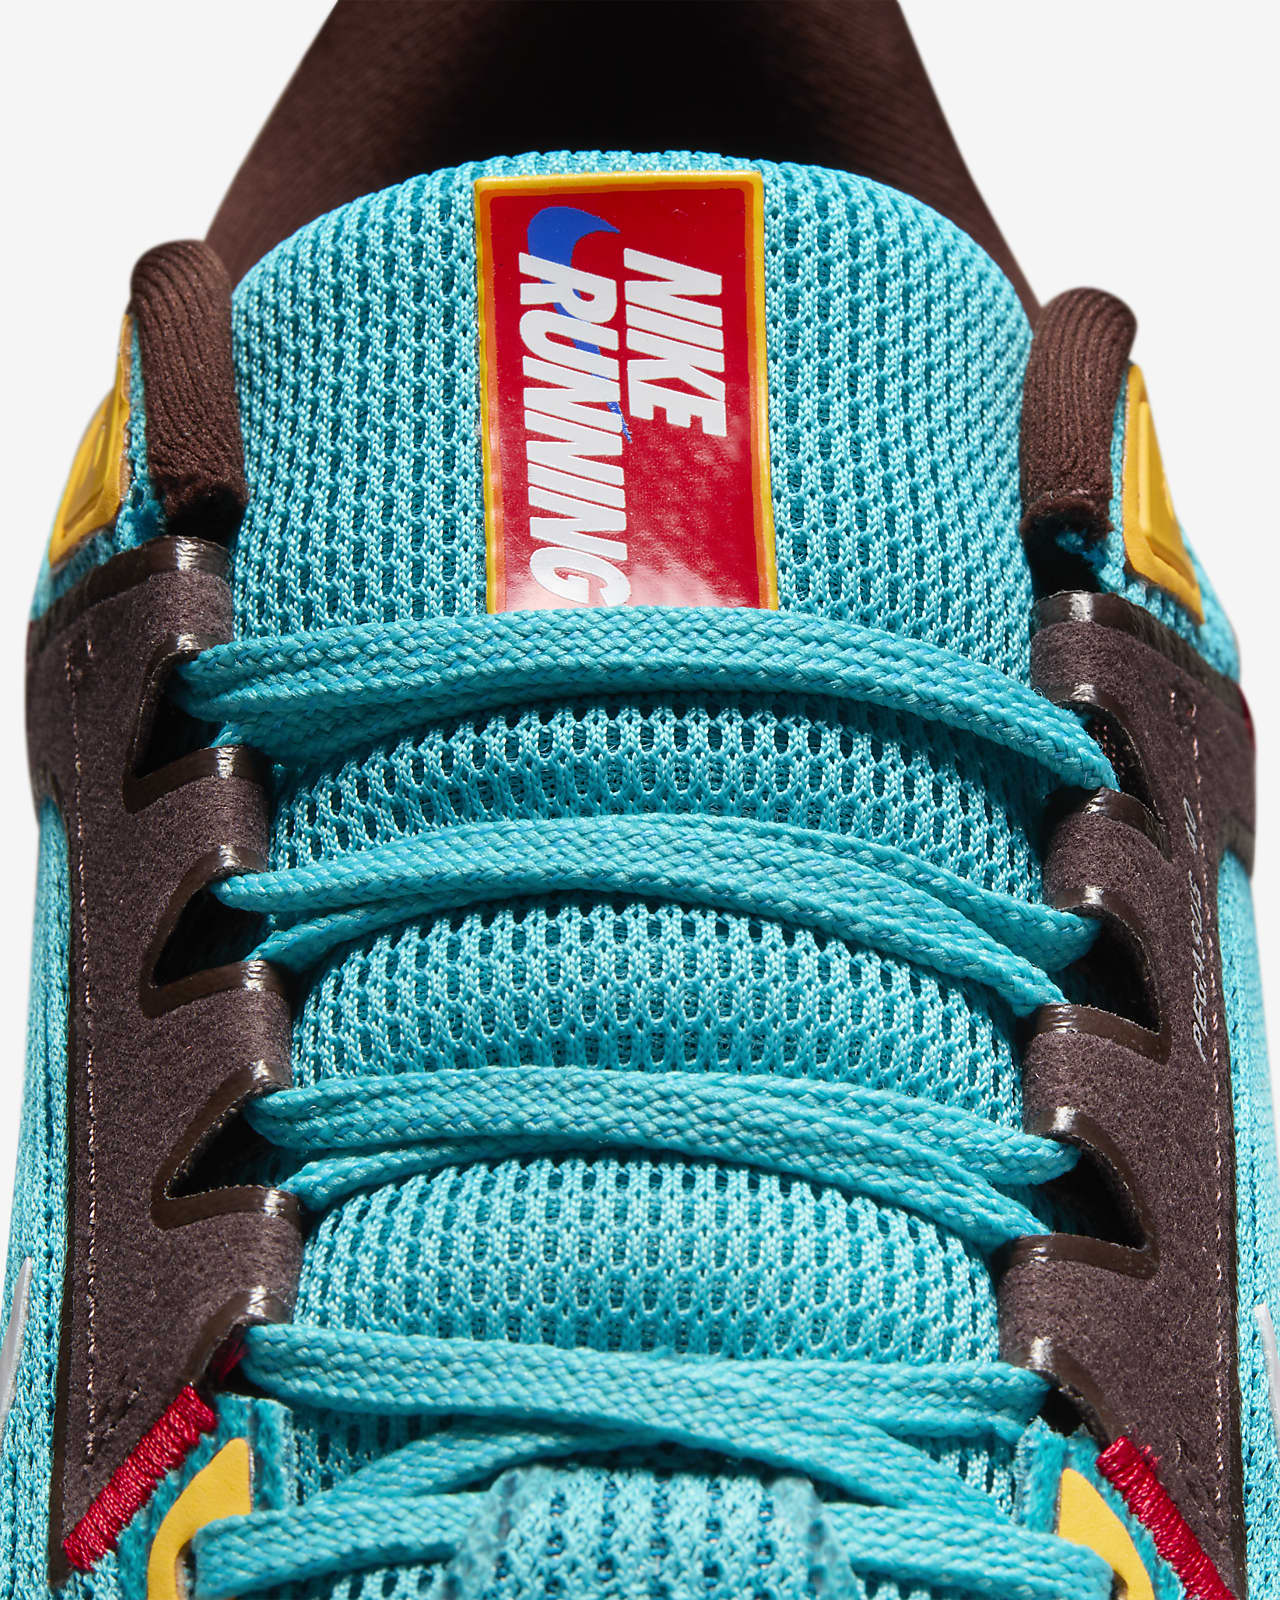 Nike Air Zoom Pegasus 40 Road-Running Shoes - Men's